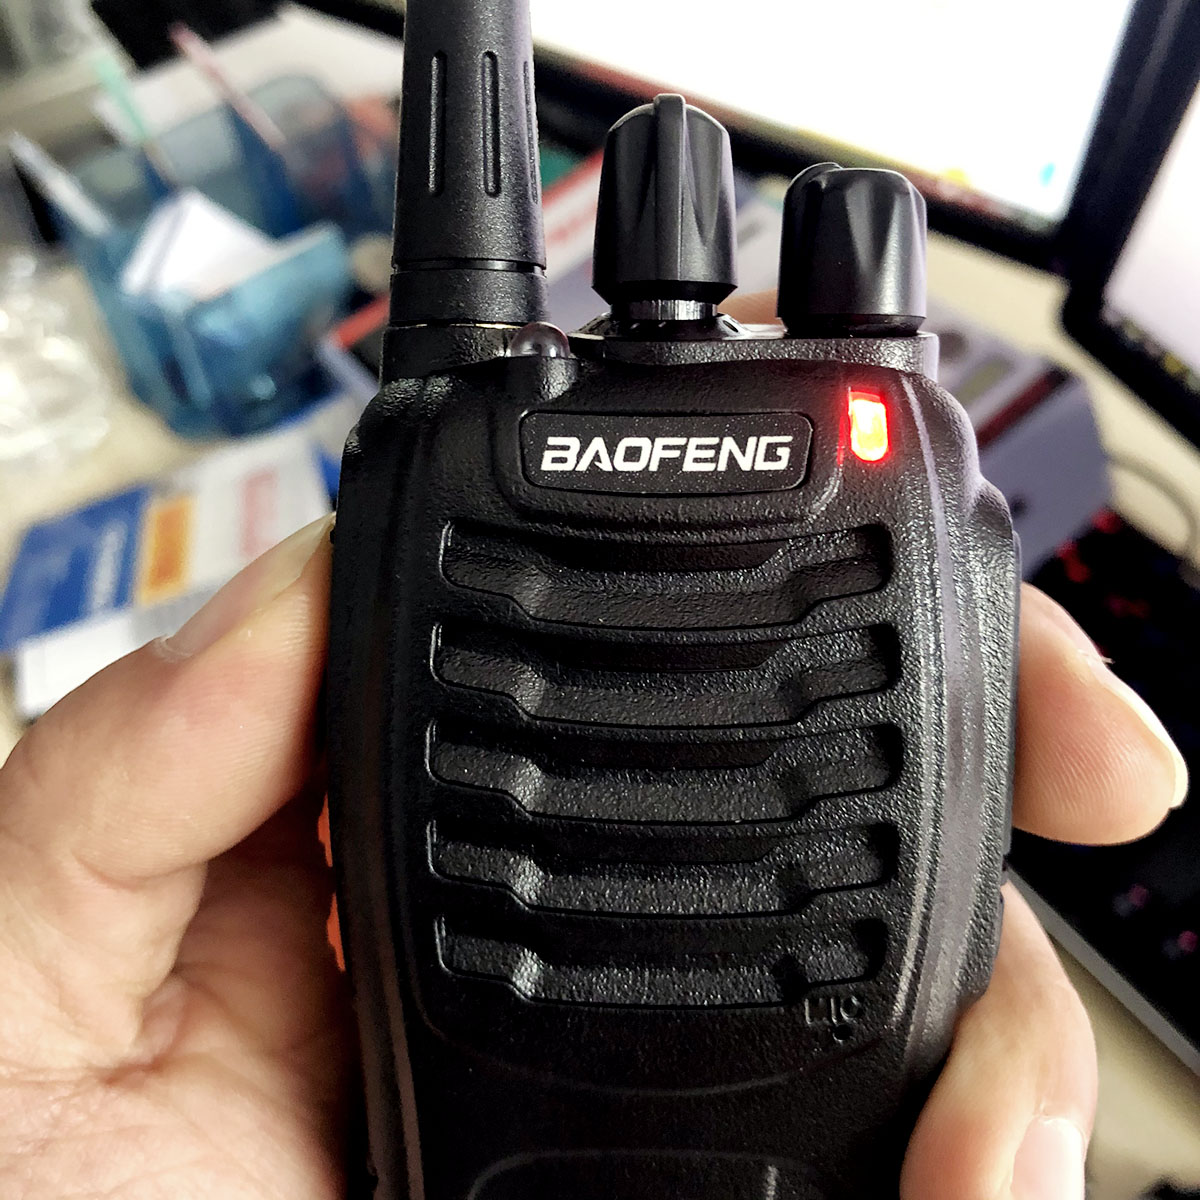 Bộ đàm Baofeng 888S phiên bản mới nhỏ gọn, liên lạc xa 2,5km, pin dùng 12 giờ, xuyên phá vật cản tốt - Hàng chính hãng